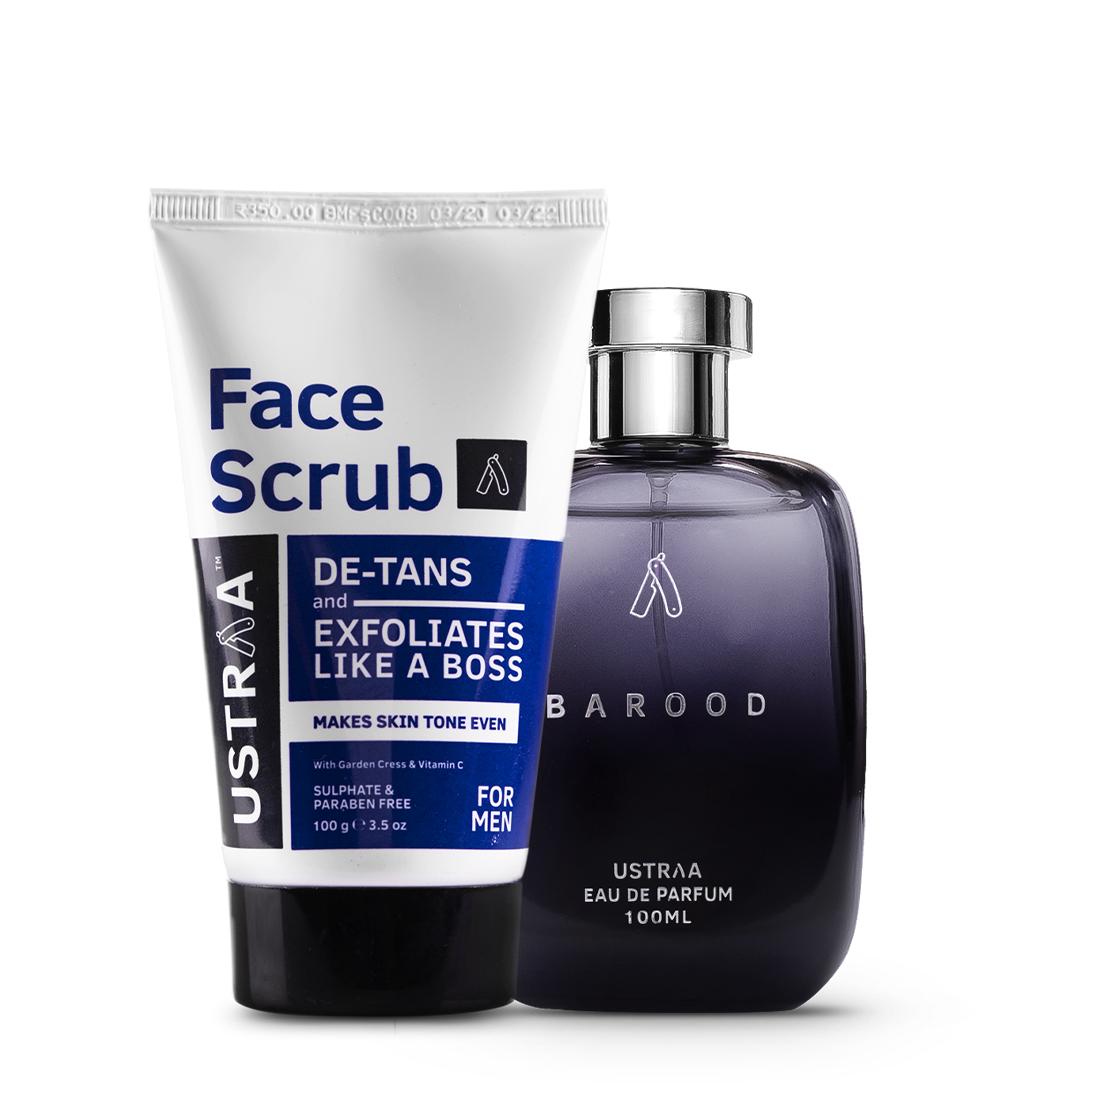 Barood EDP -  Perfume for Men & De-Tan Face Scrub